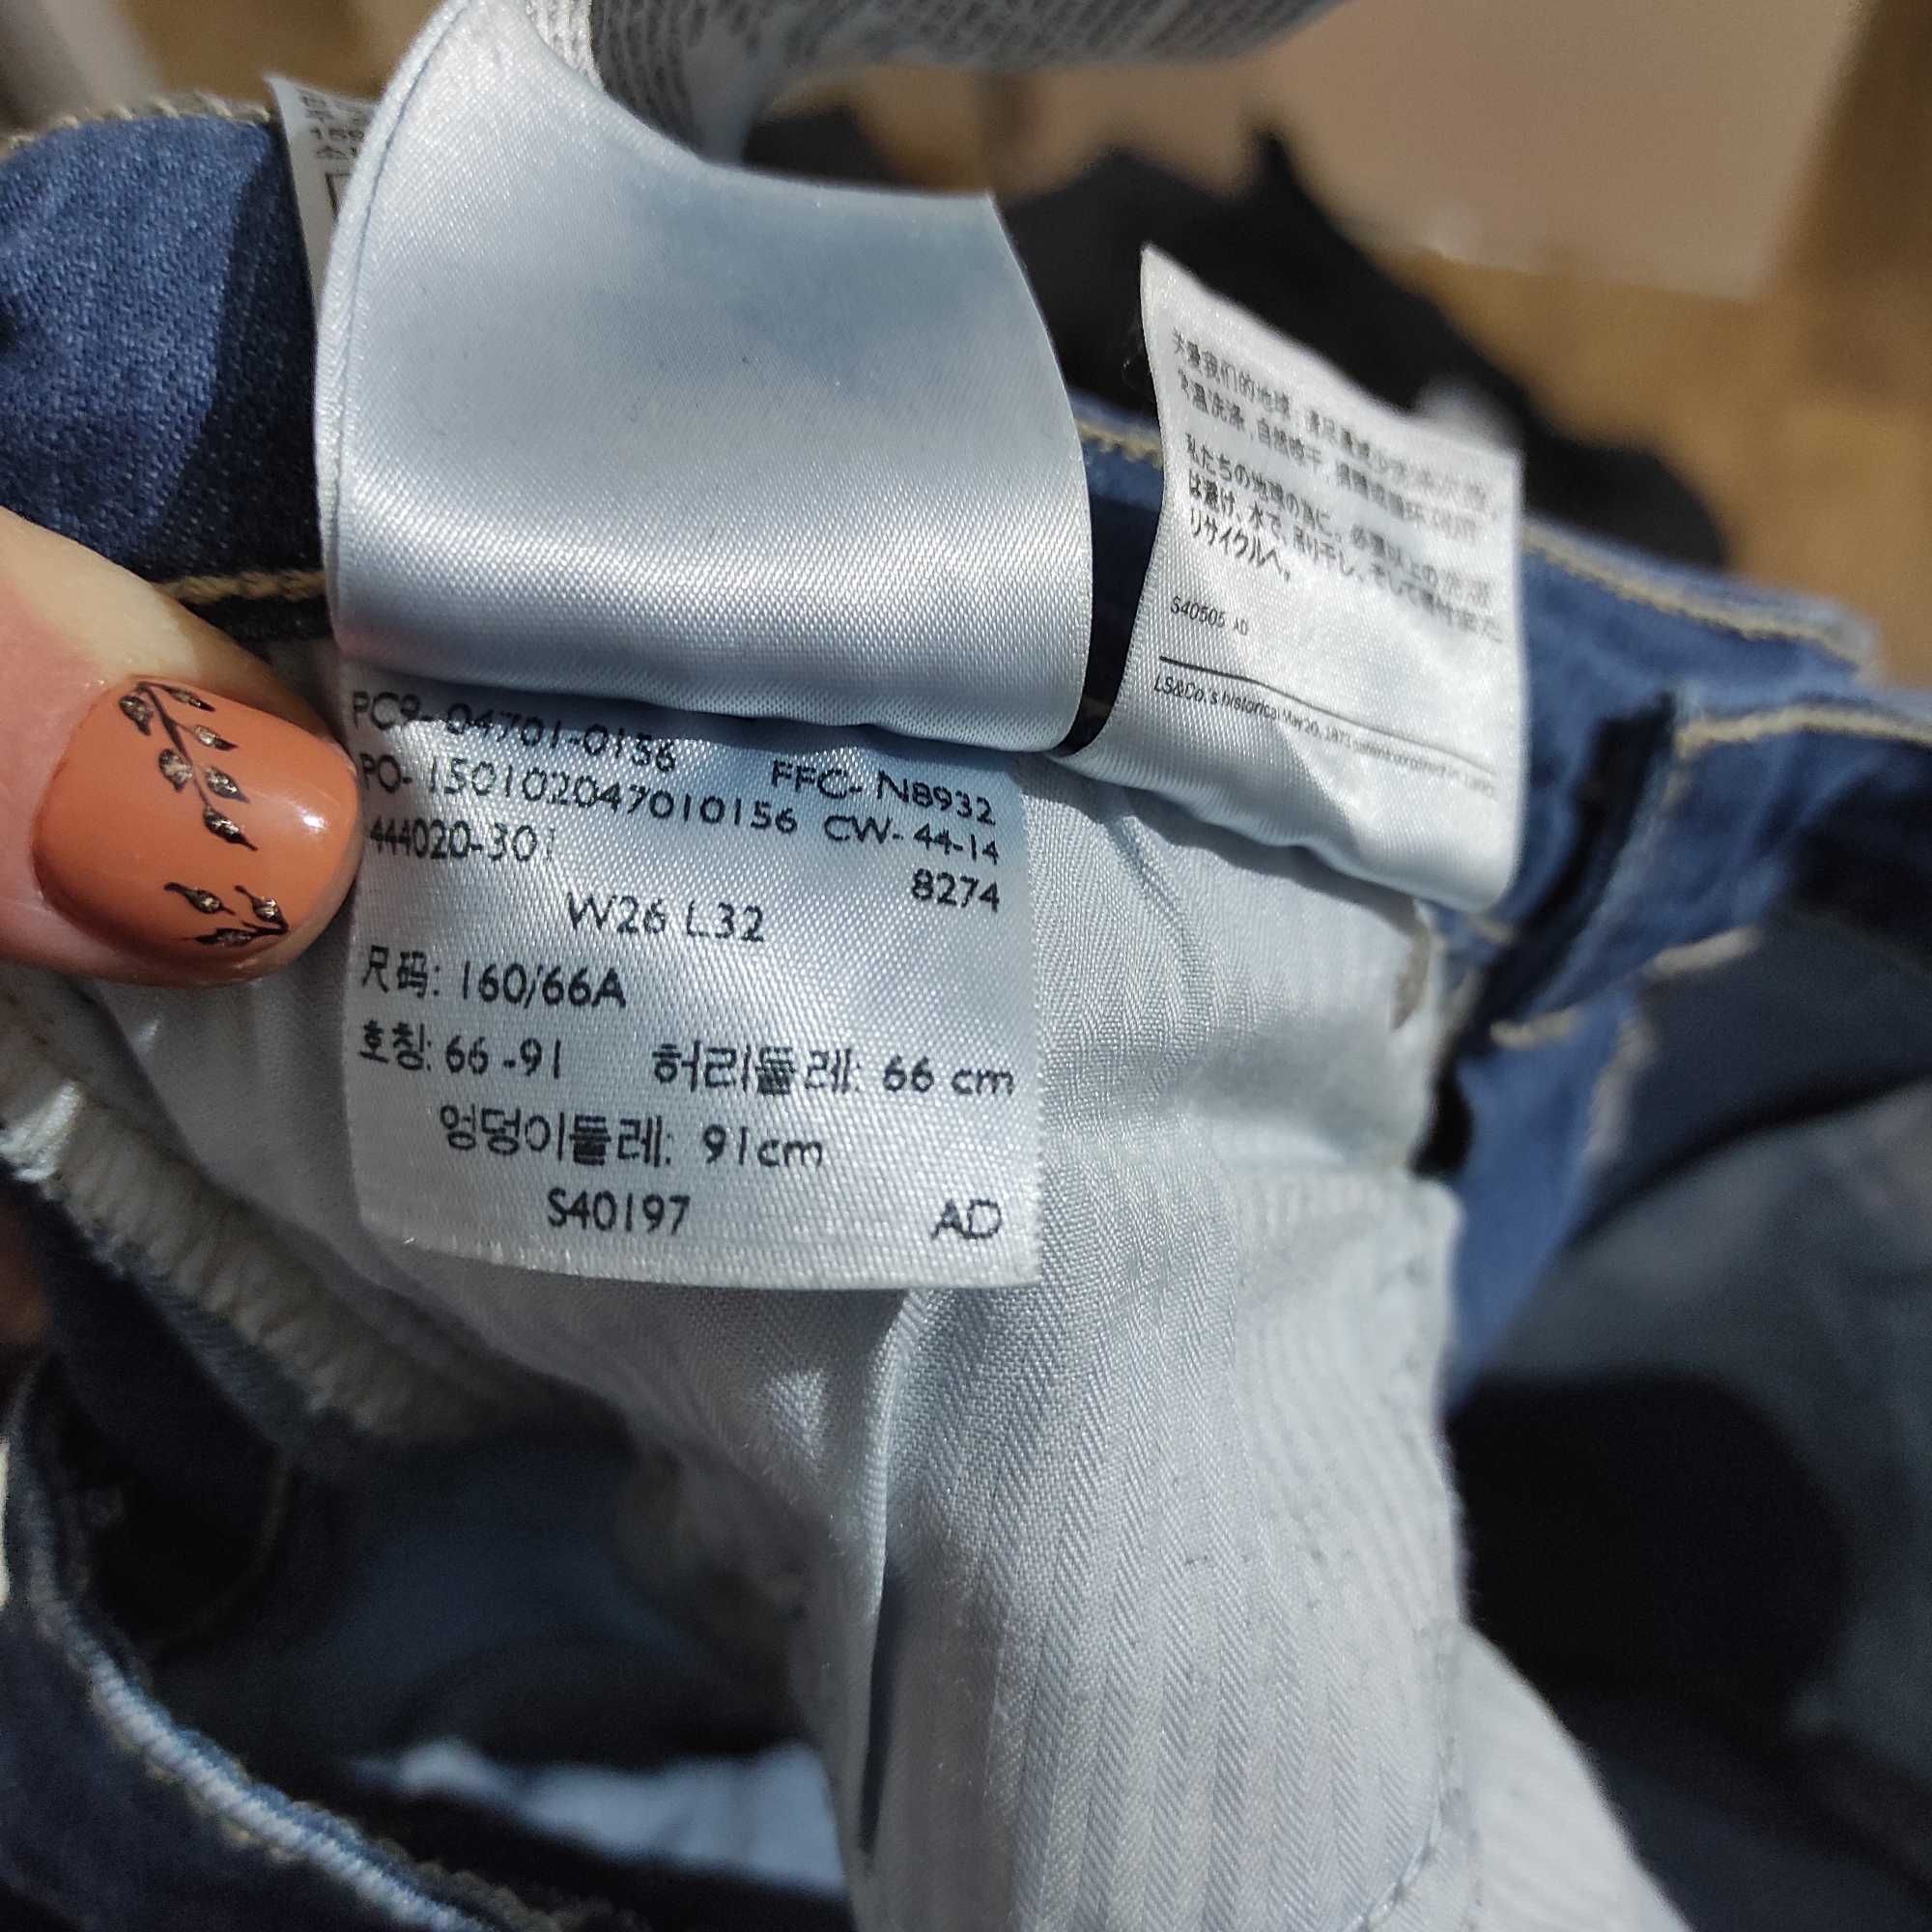 Jeans Levi's Demi Curve Damskie Spodnie Damskie Dżinsowe Size W26 L32